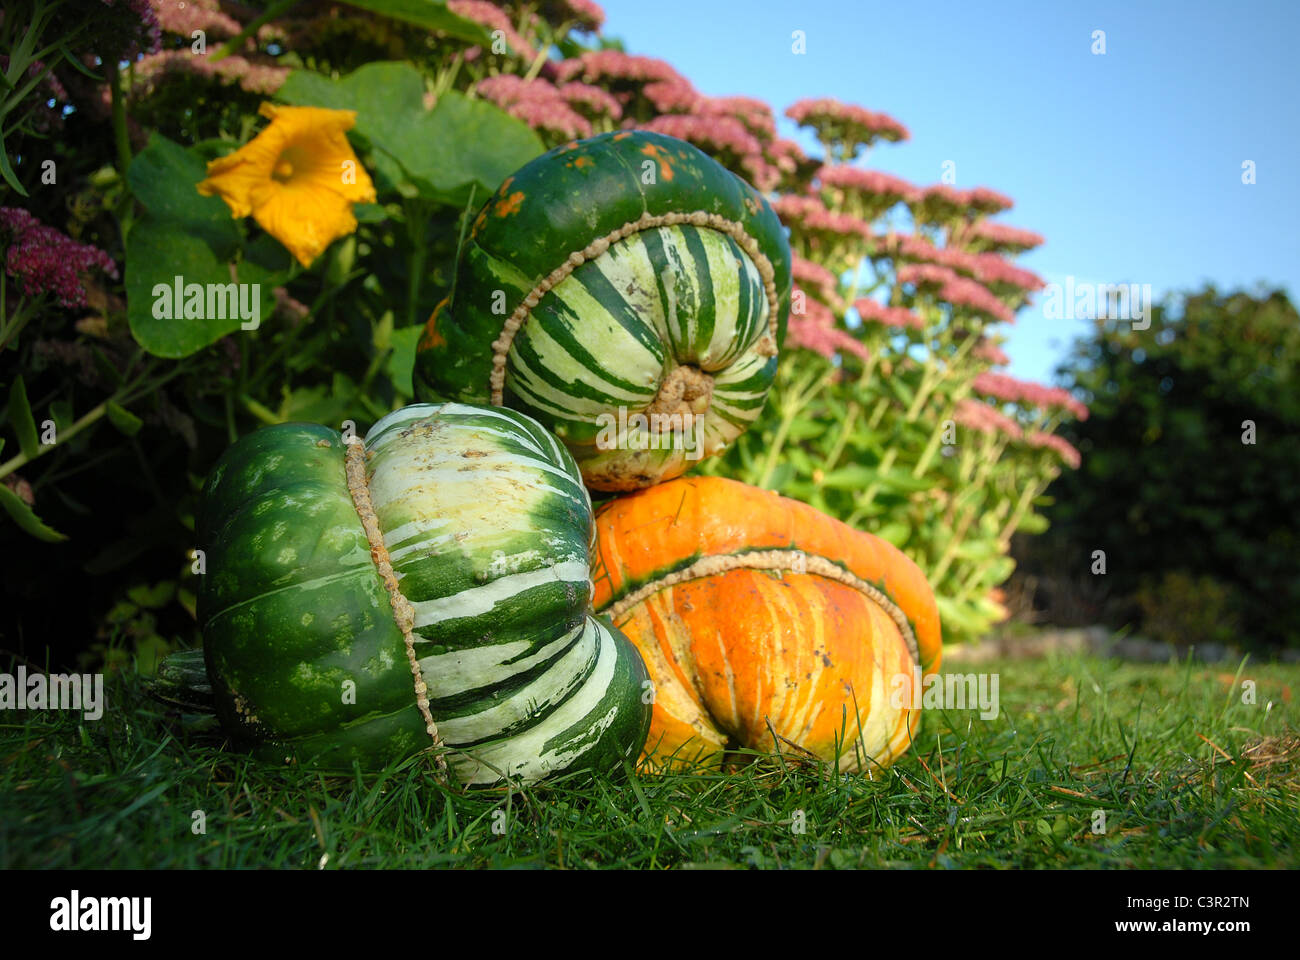 Mature del vescovo hat zucche in autunno si vede in un riparto giardino ad Amburgo, Germania Foto Stock